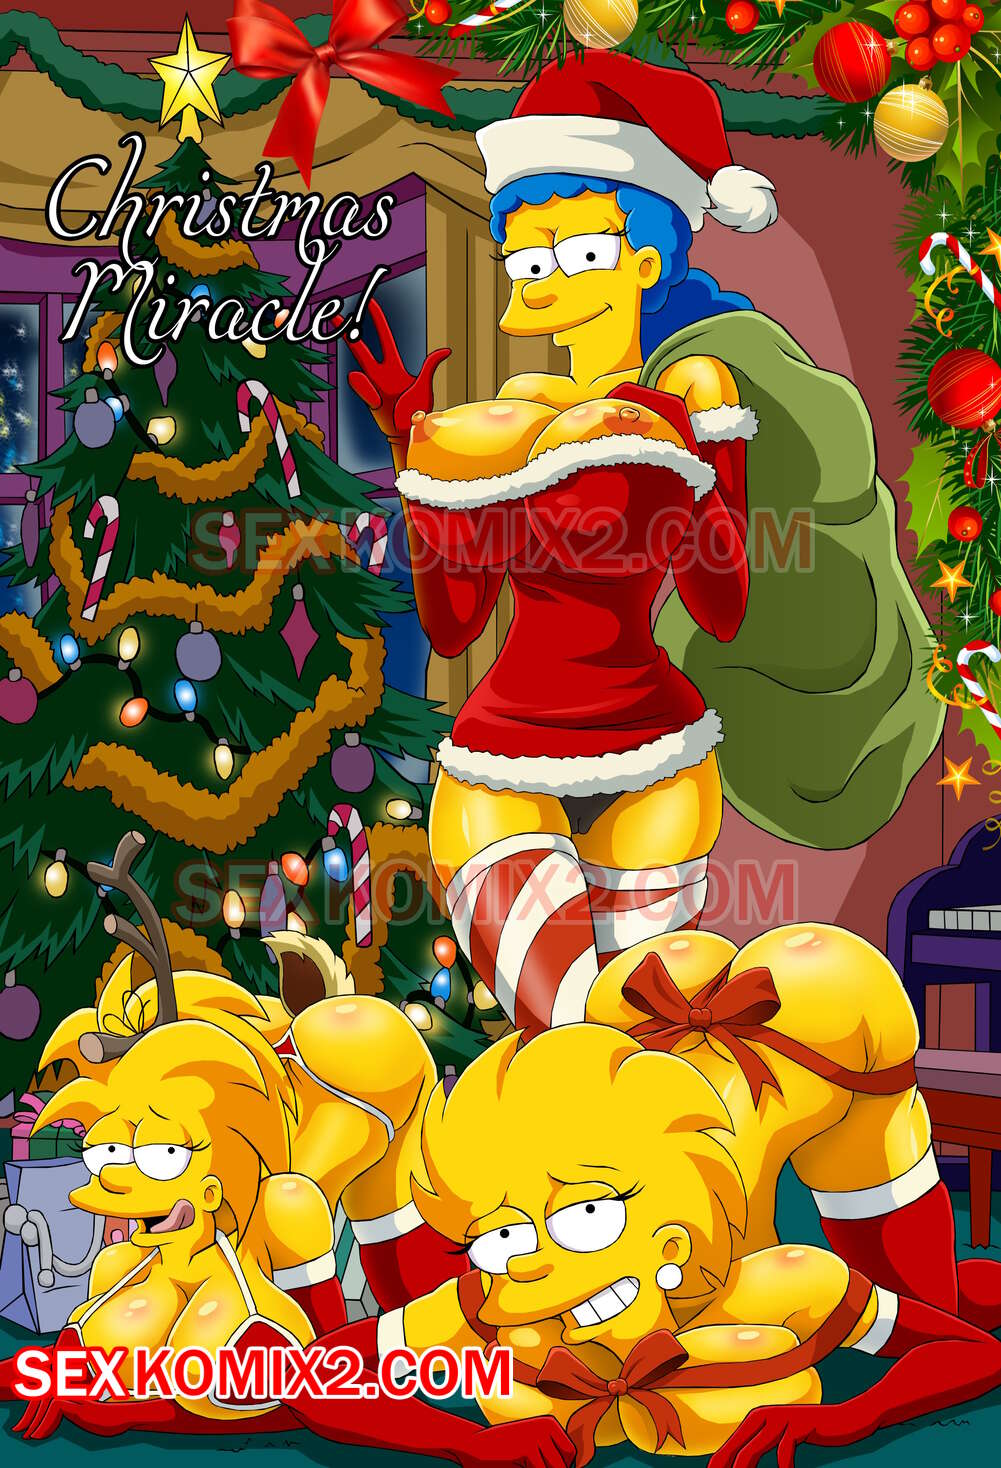 1001px x 1468px - âœ…ï¸ Porn comic The Simpsons. Christmas Miracle. by sexkomix2.com. | Comics  porno en espaÃ±ol solo para adultos | sexkomix2.com